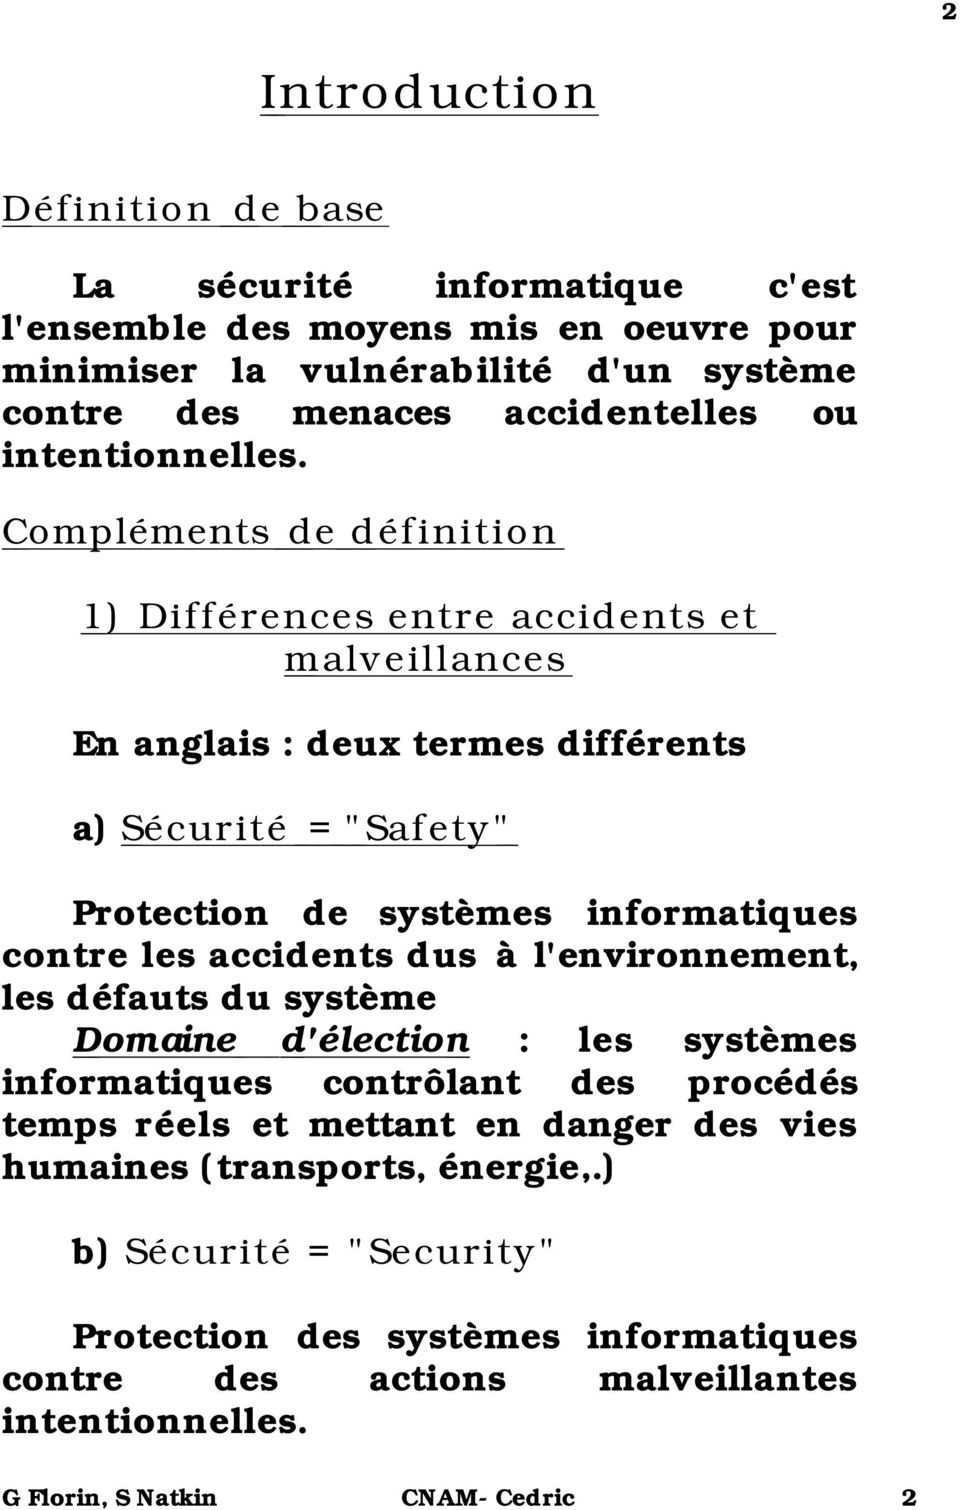 Compléments de définition 1) Différences entre accidents et malveillances En anglais : deux termes différents a) Sécurité = "Safety" Protection de systèmes informatiques contre les